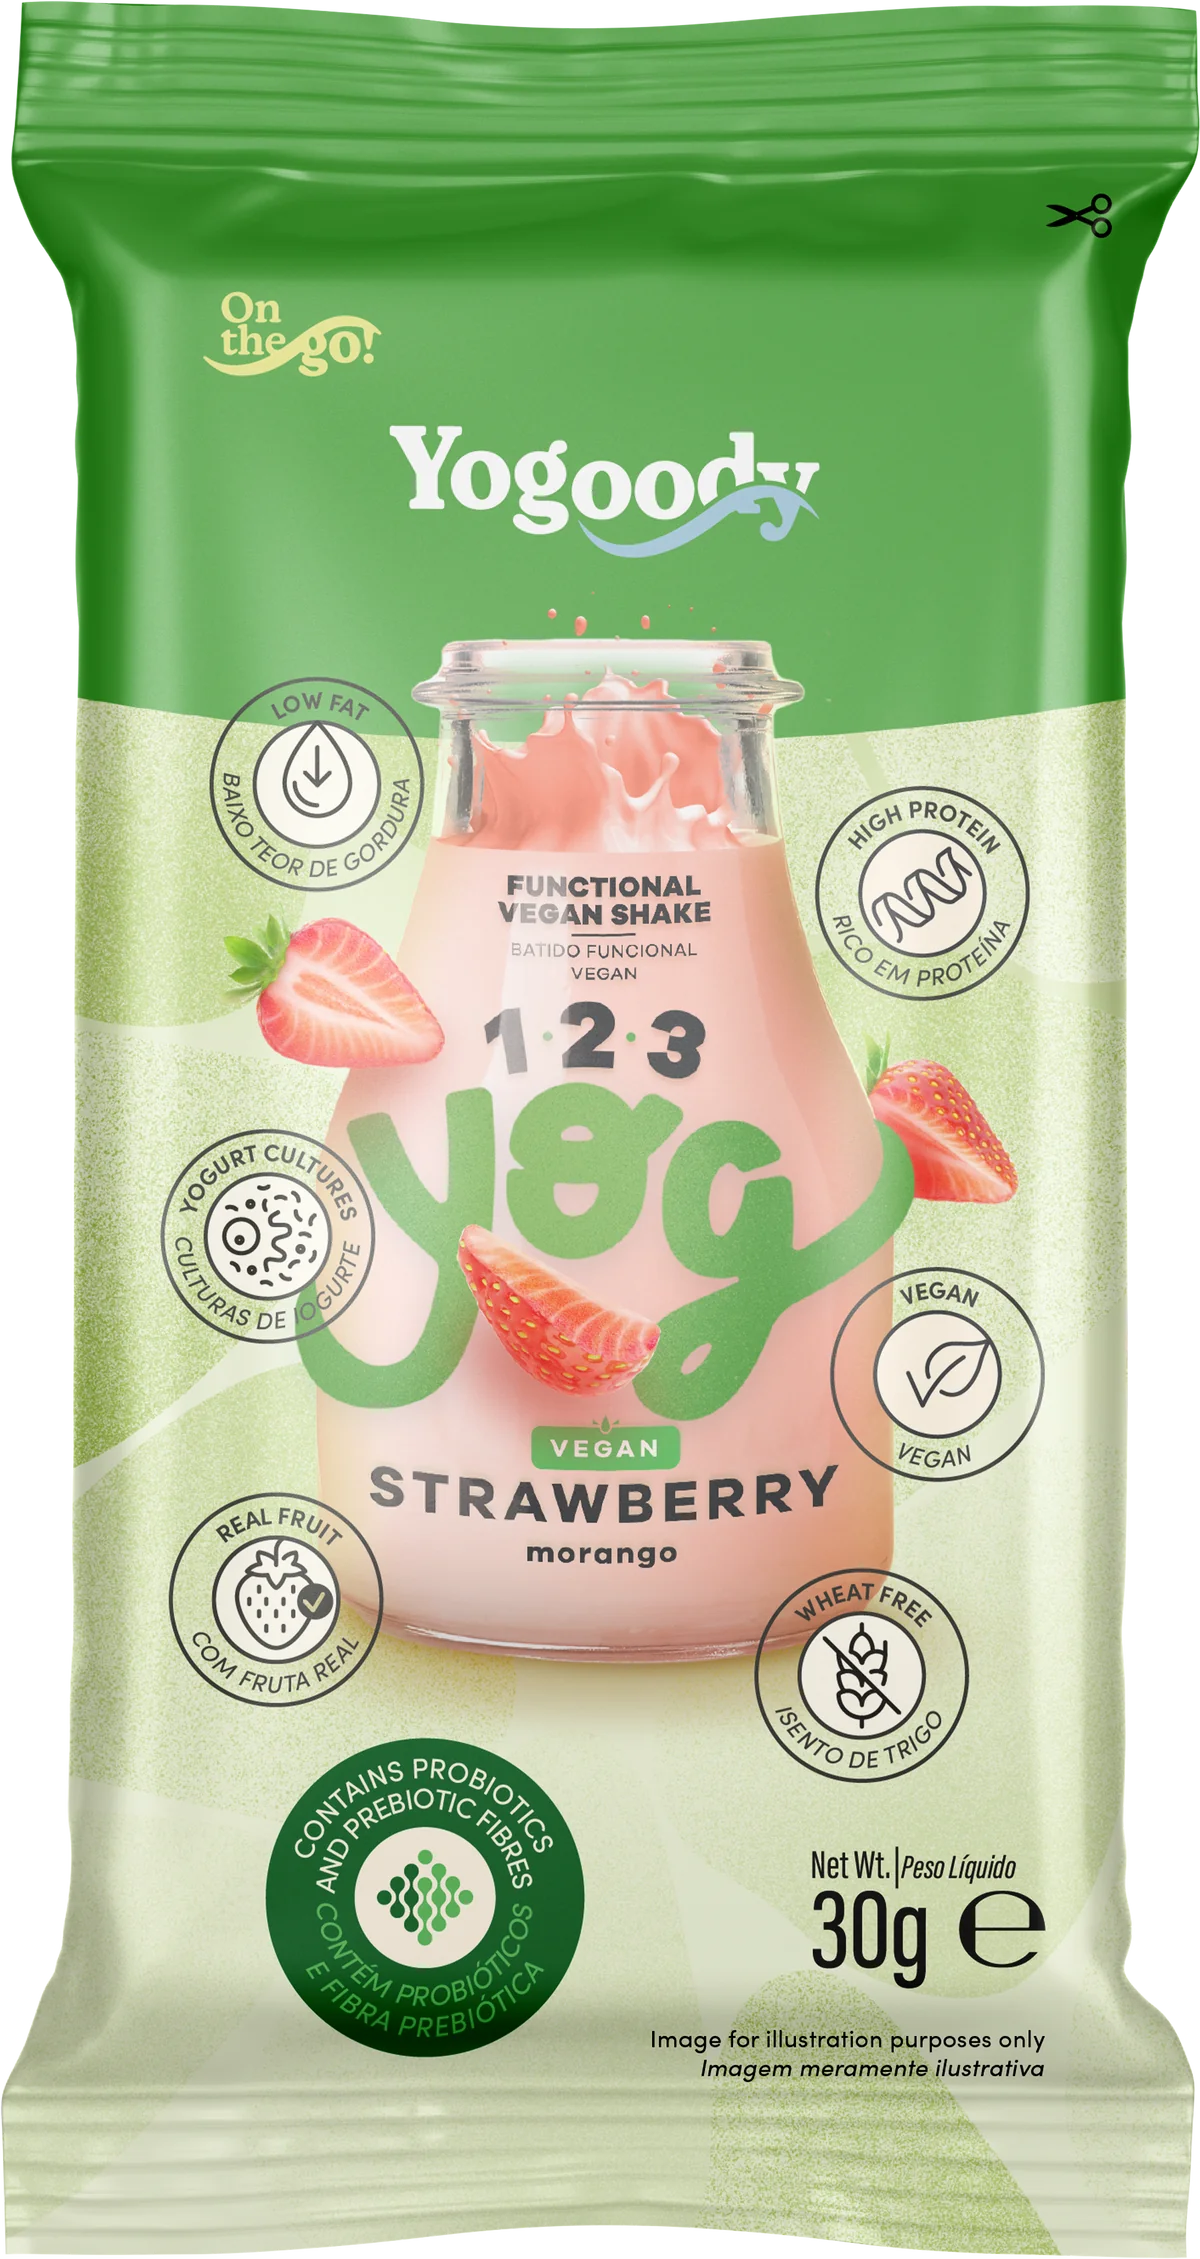 Welcome Pack - 1.2.3. YOG Vegan Strawberry and Vanilla Shakes (10 x 30g sachets + FREE shaker)